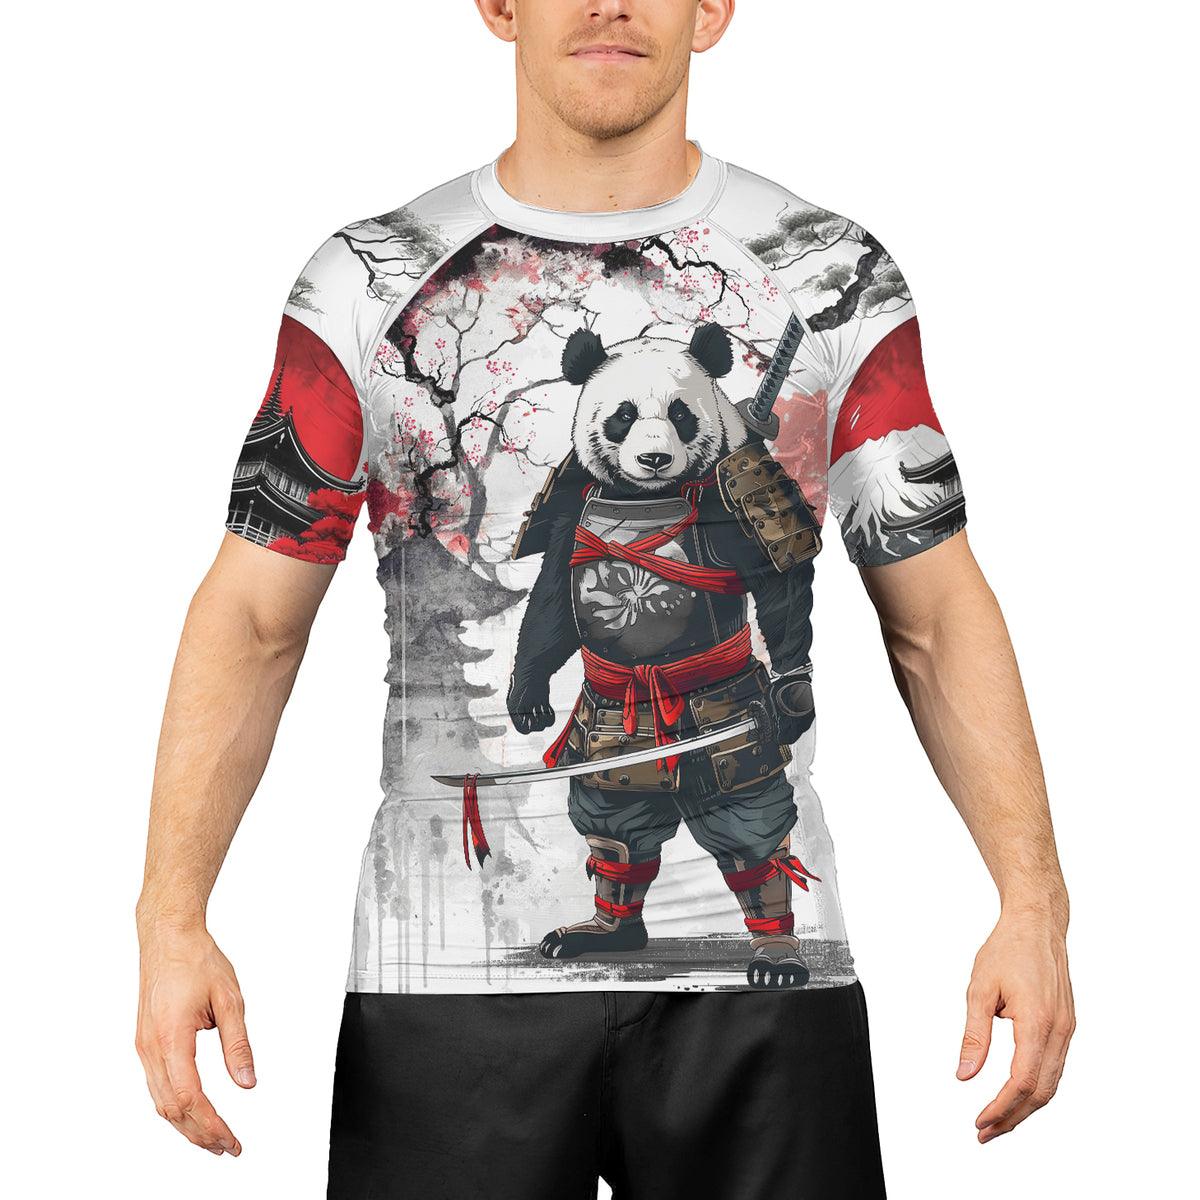 Rashninja Samurai Panda Warrior Men's Short Sleeve Rash Guard - Rashninja LLC